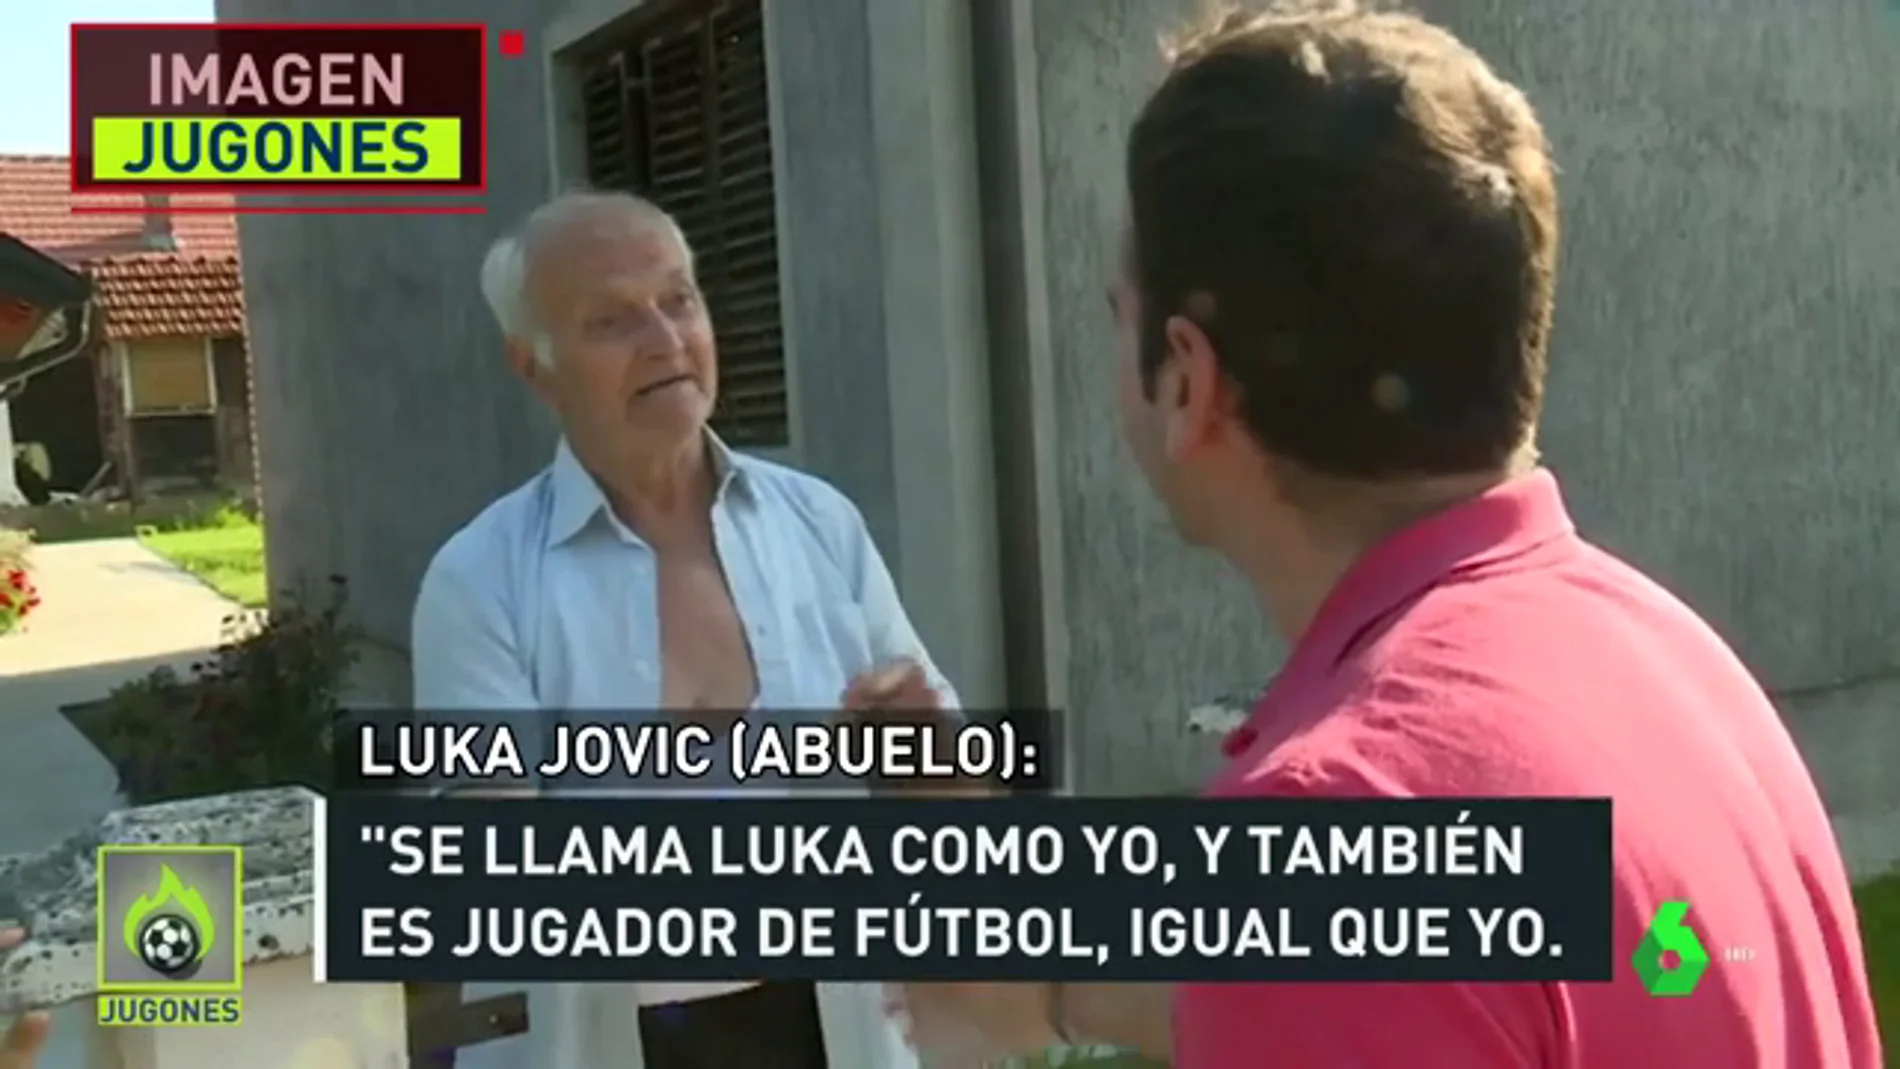 La familia y el pueblo de Jovic, rendido al joven jugador: "Siempre le veo cuando juega"